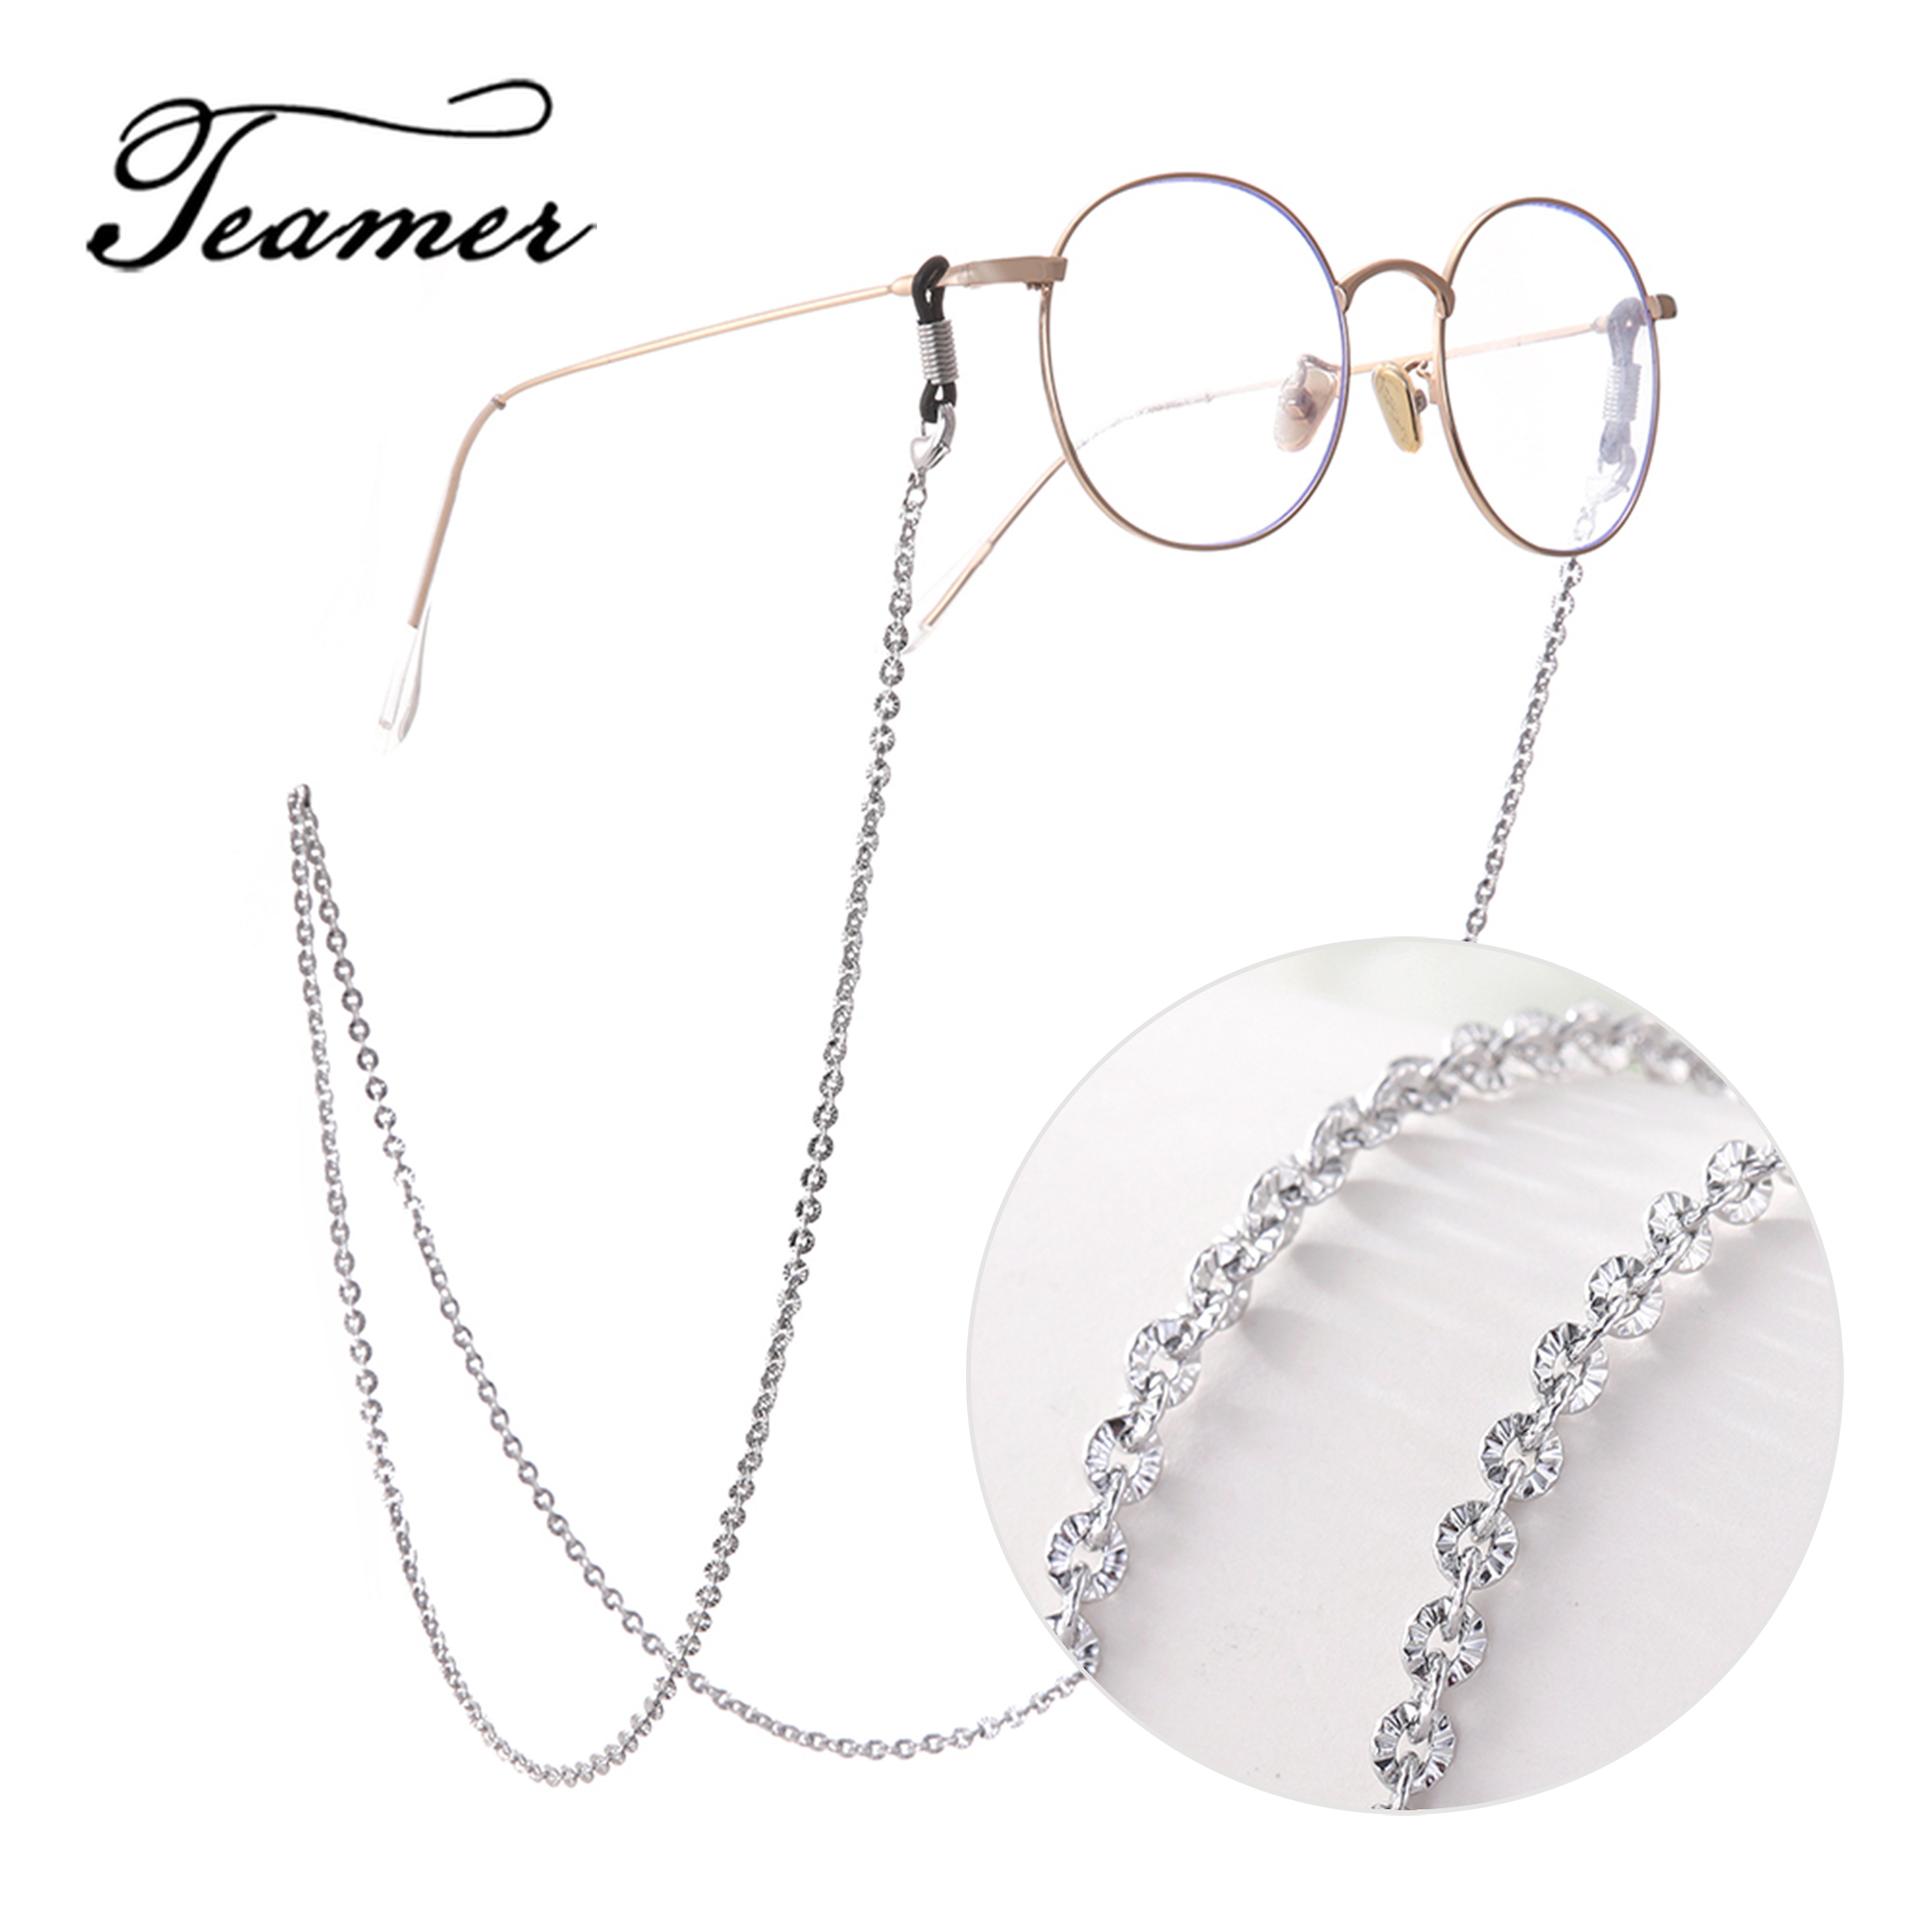 Teamer 78 Metall Gläser Kette für Frauen Sonnenbrille Kette Gurt Nacken Halfter Schlüsselband Brillen Zubehör